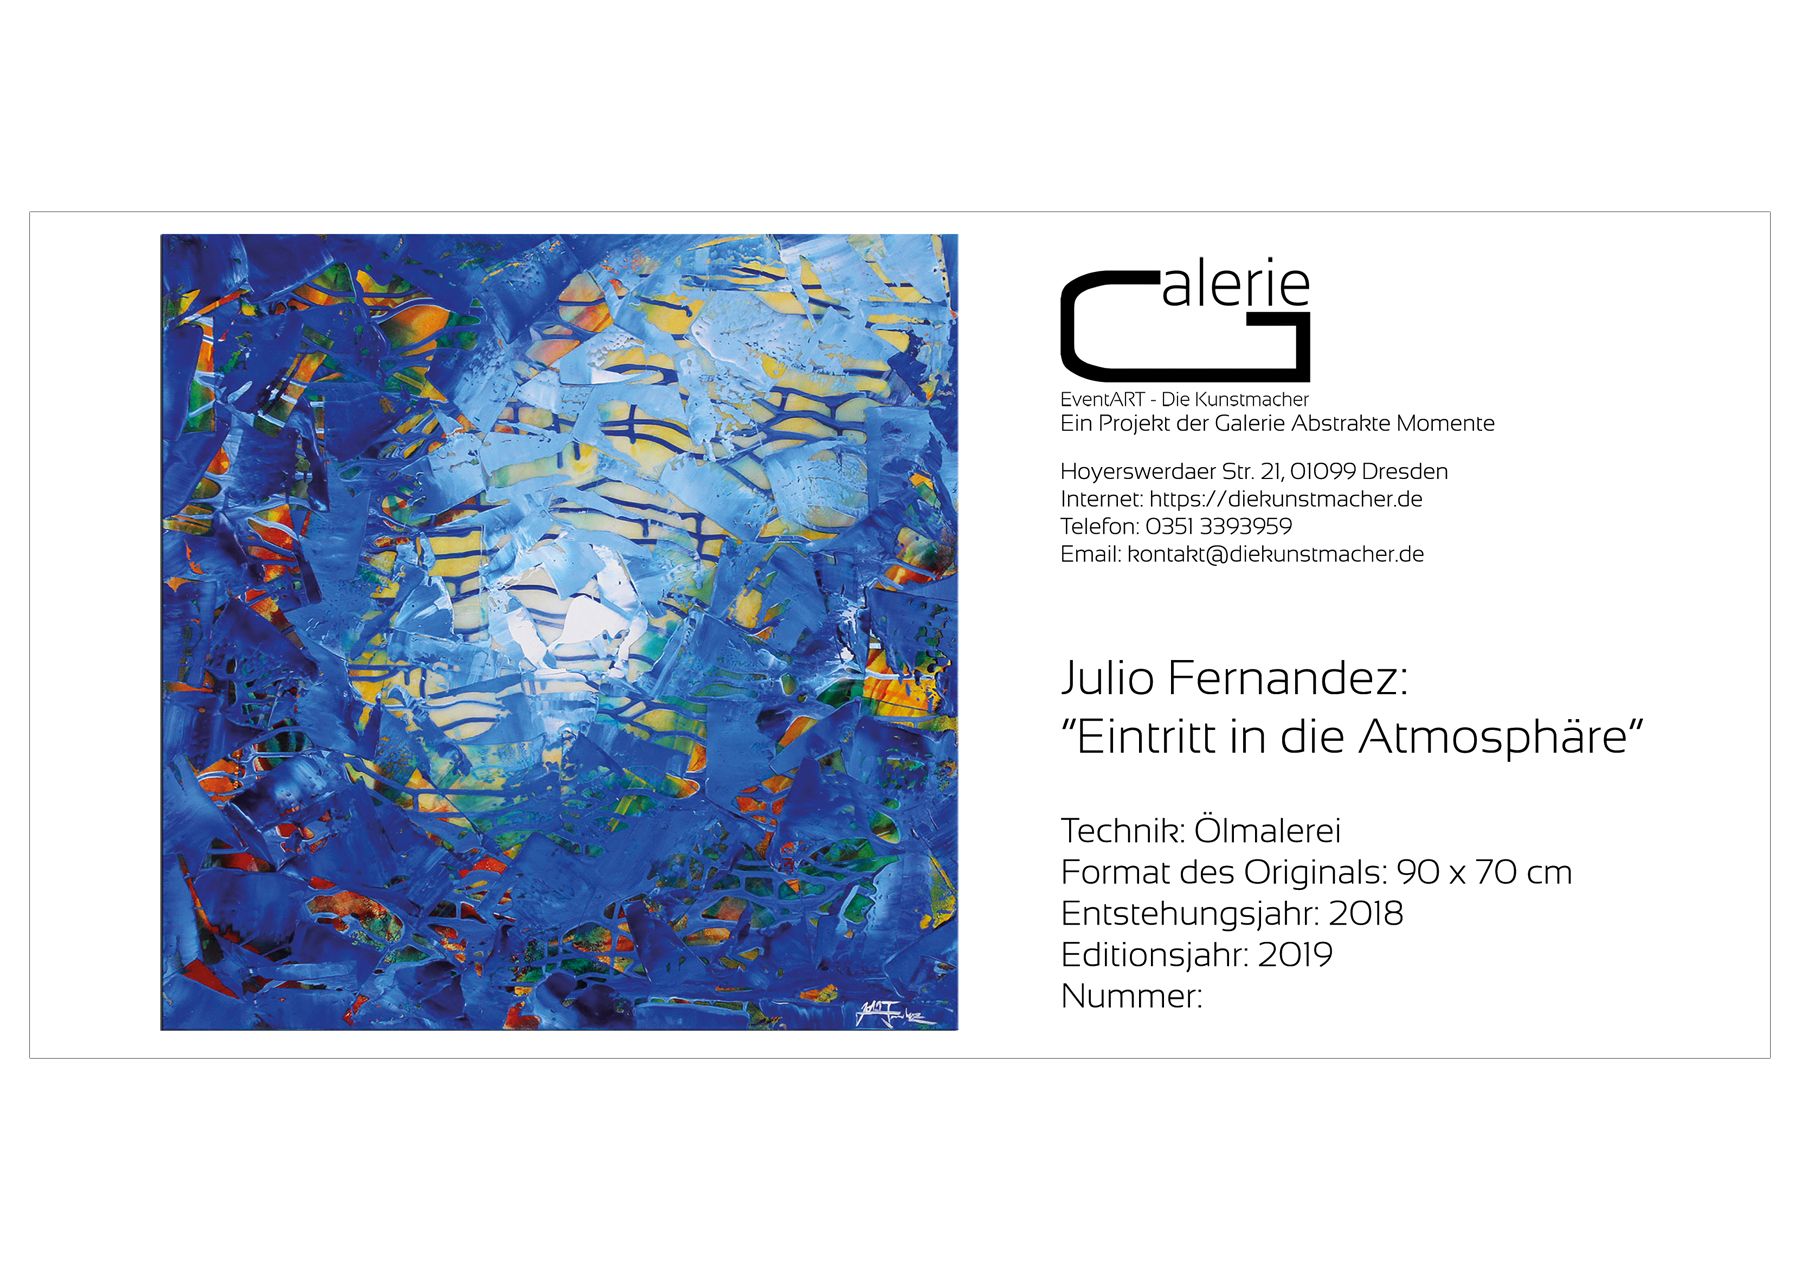 J. Fernandez: "Eintritt in die Atmosphäre", Sonderedition, Monatsgemälde als Kunstdruck